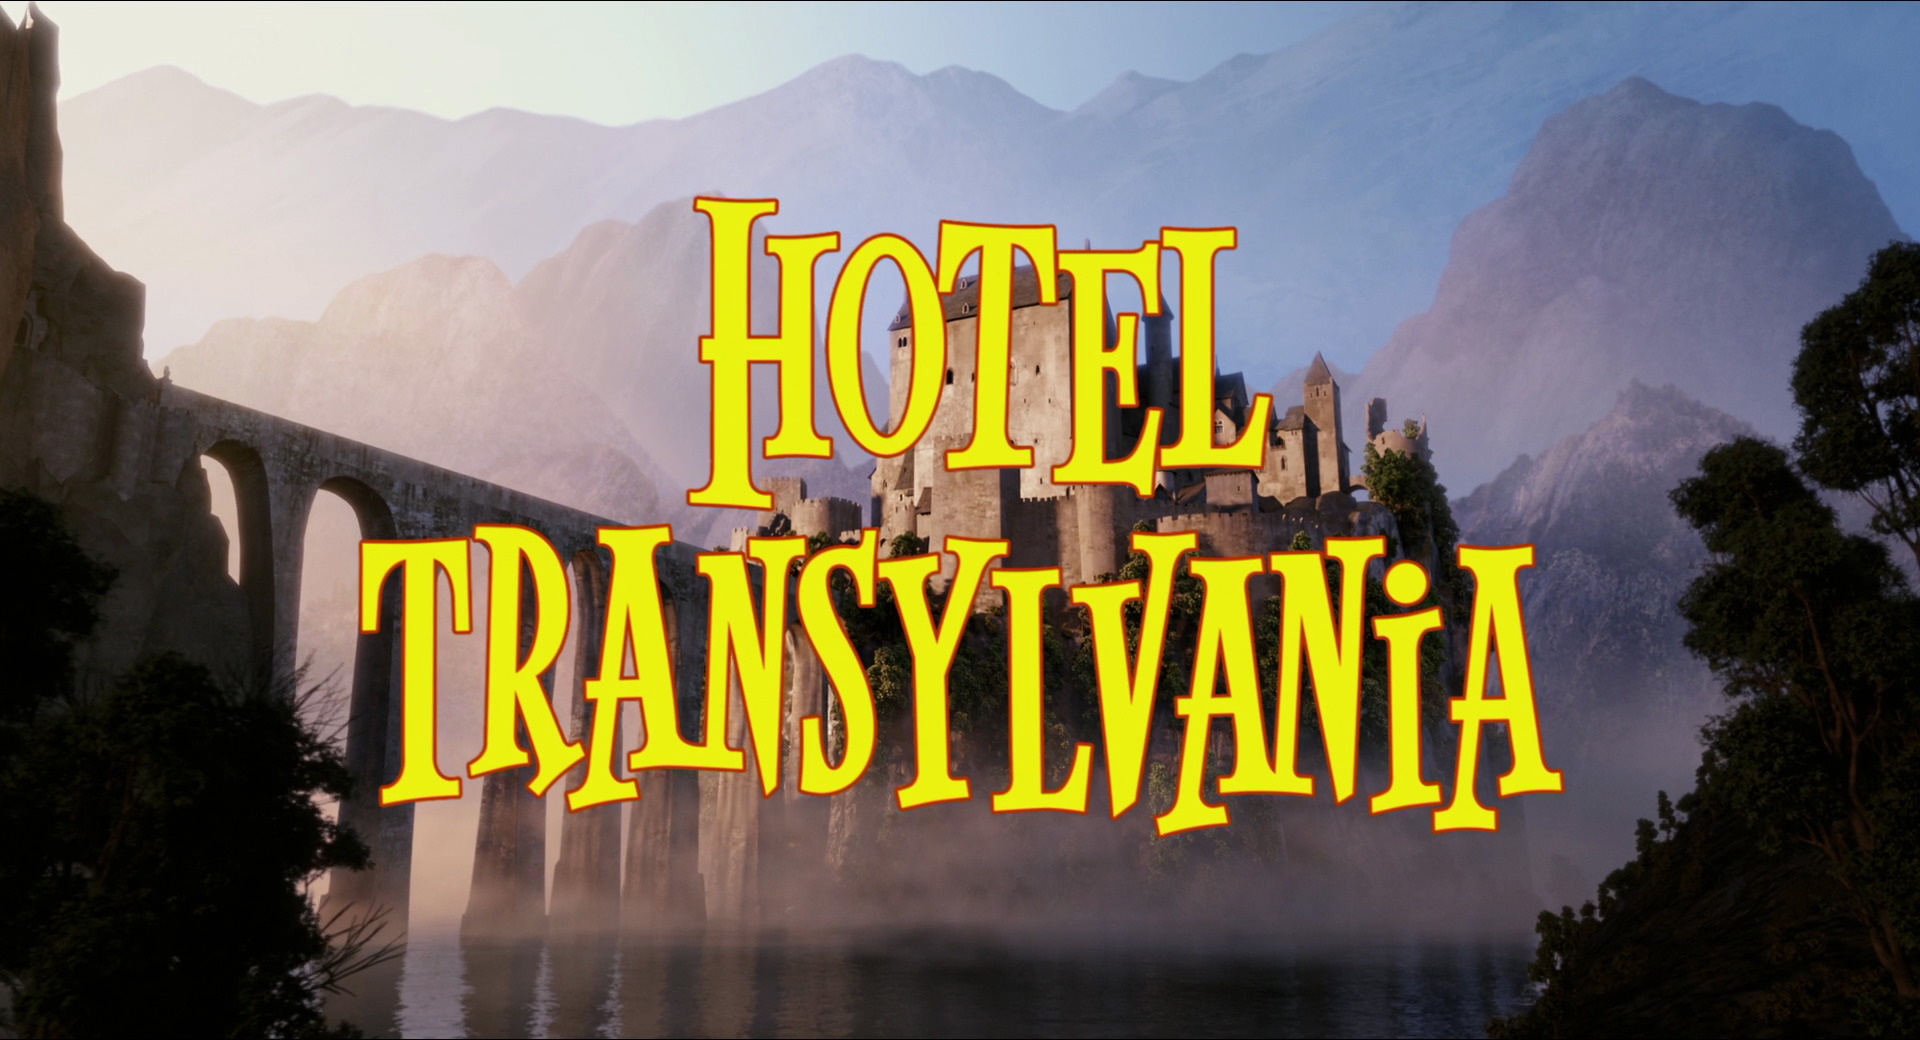 Hotel Transylvania | Sony Pictures Animation Wiki | FANDOM powered by Wikia